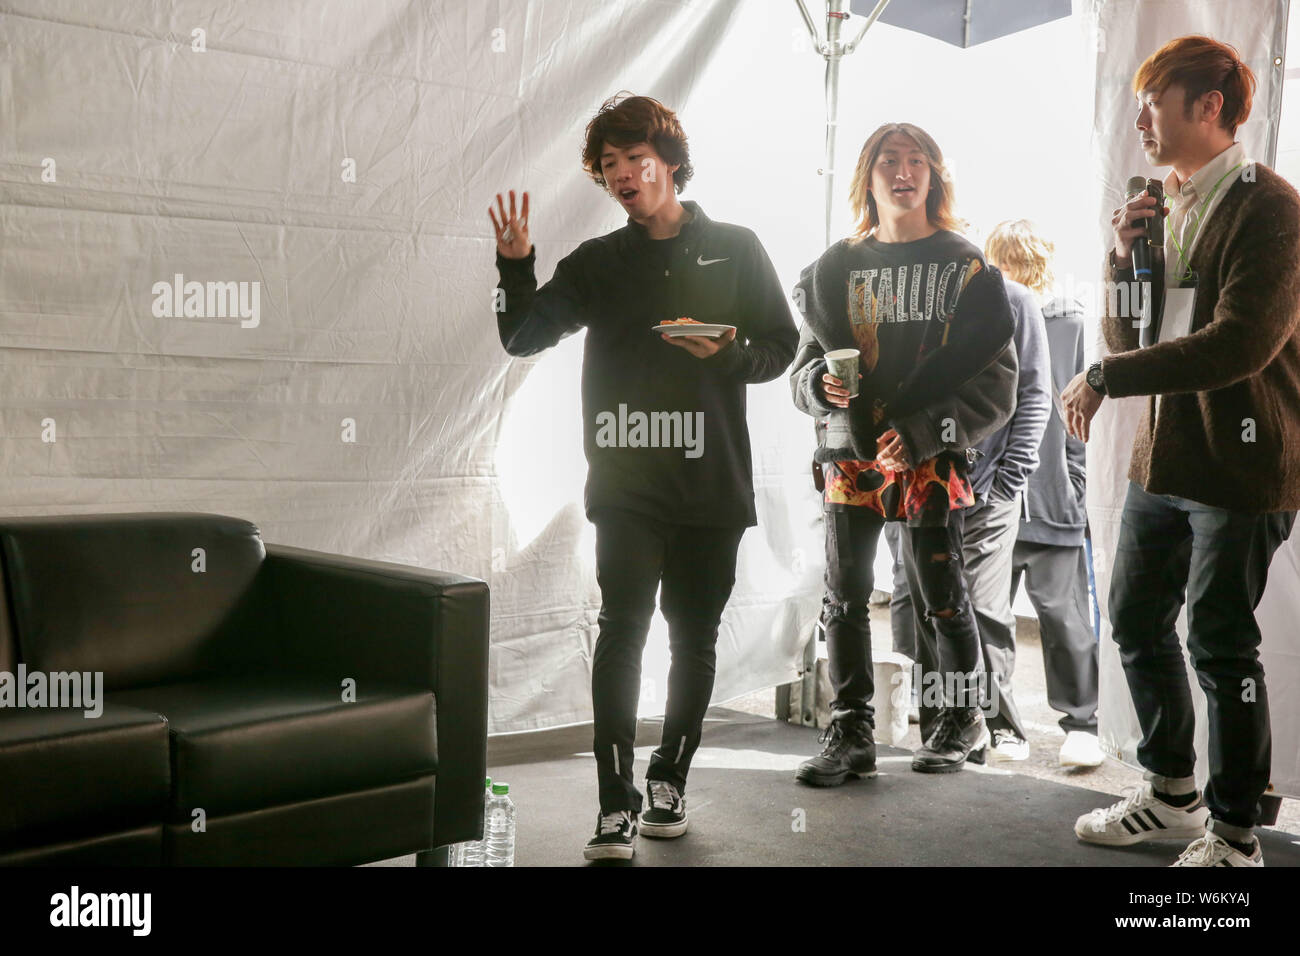 ** TAIWAN AUS ** Mitglieder der japanischen Rock Band One Ok Rock nehmen an einer Pressekonferenz für Ihre "Ambitionen Asien Tour 2018' conert in Taipei, Taiwan, 27 Ja Stockfoto